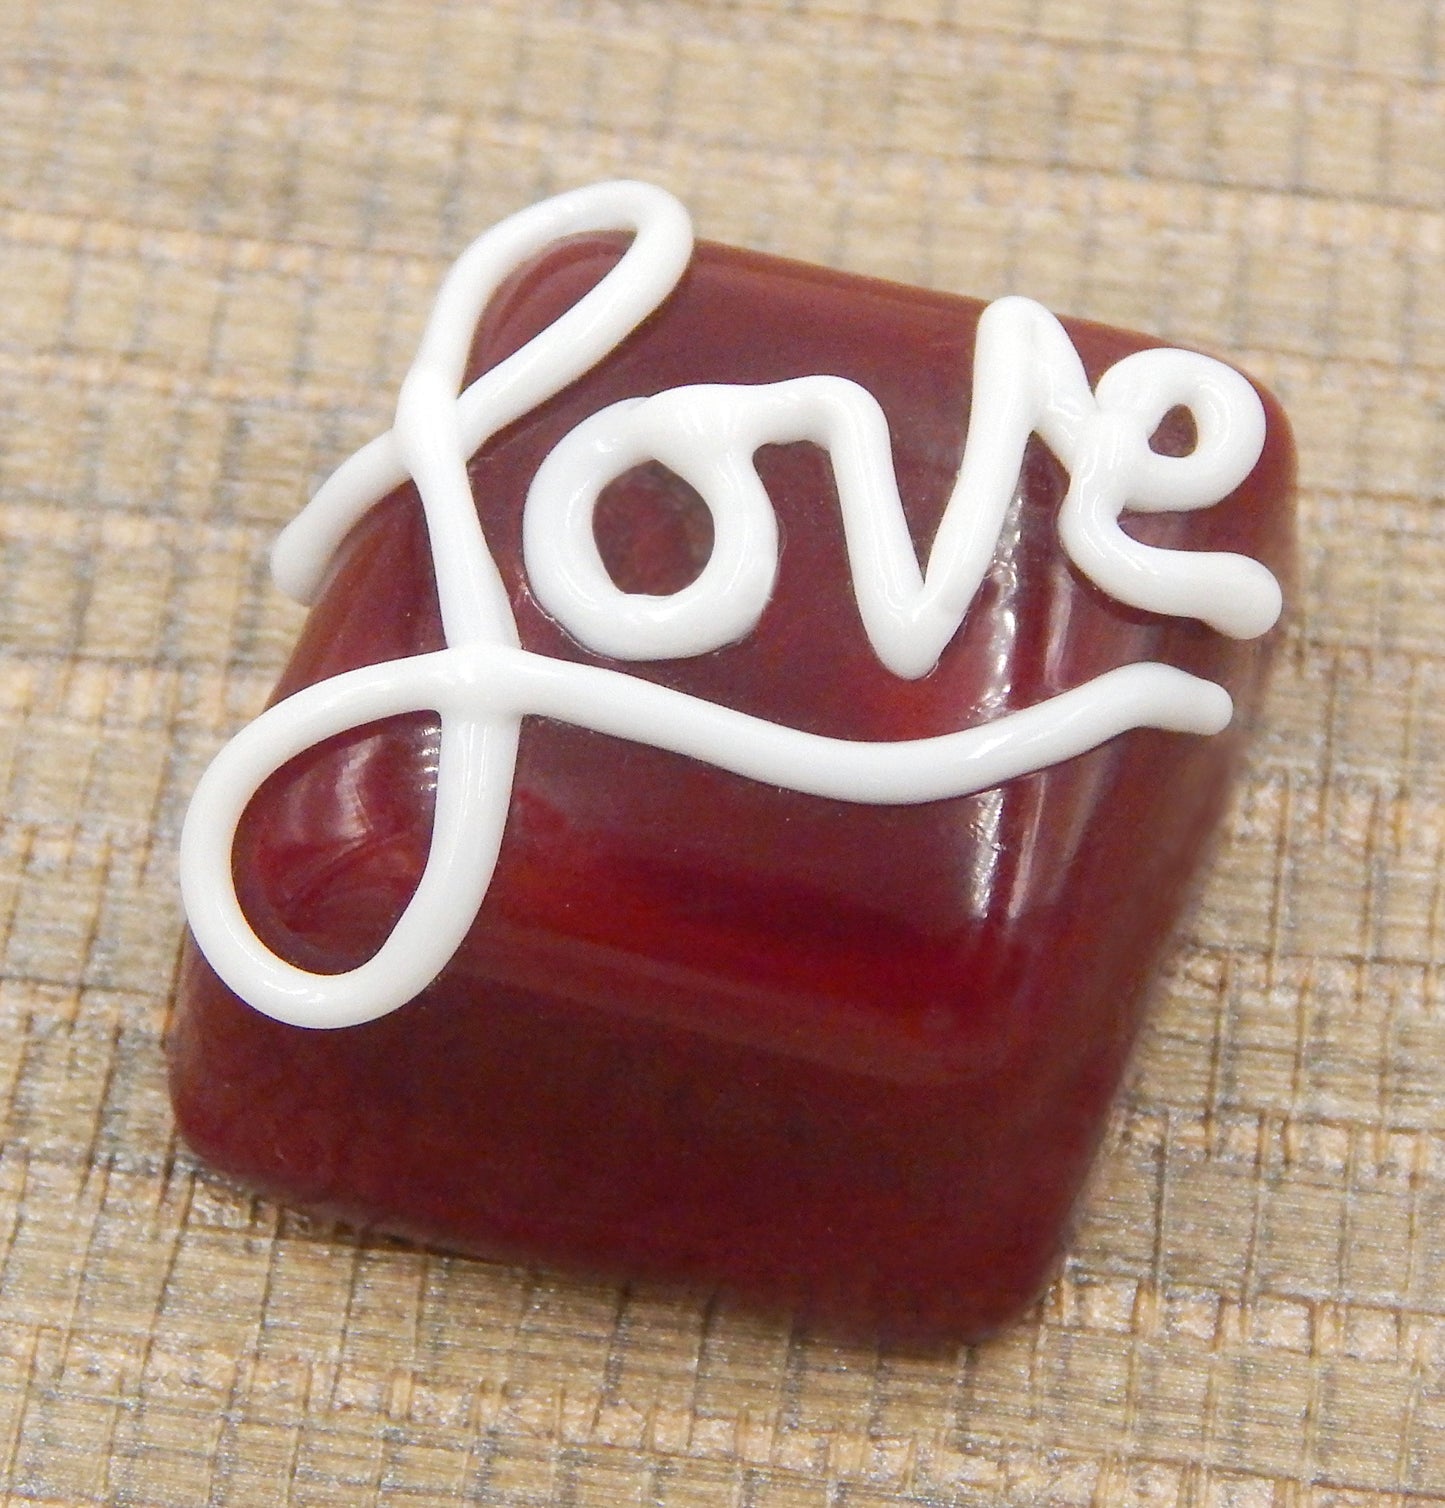 Cherry Red & White Chocolate "Love" Treat (17-012HW)